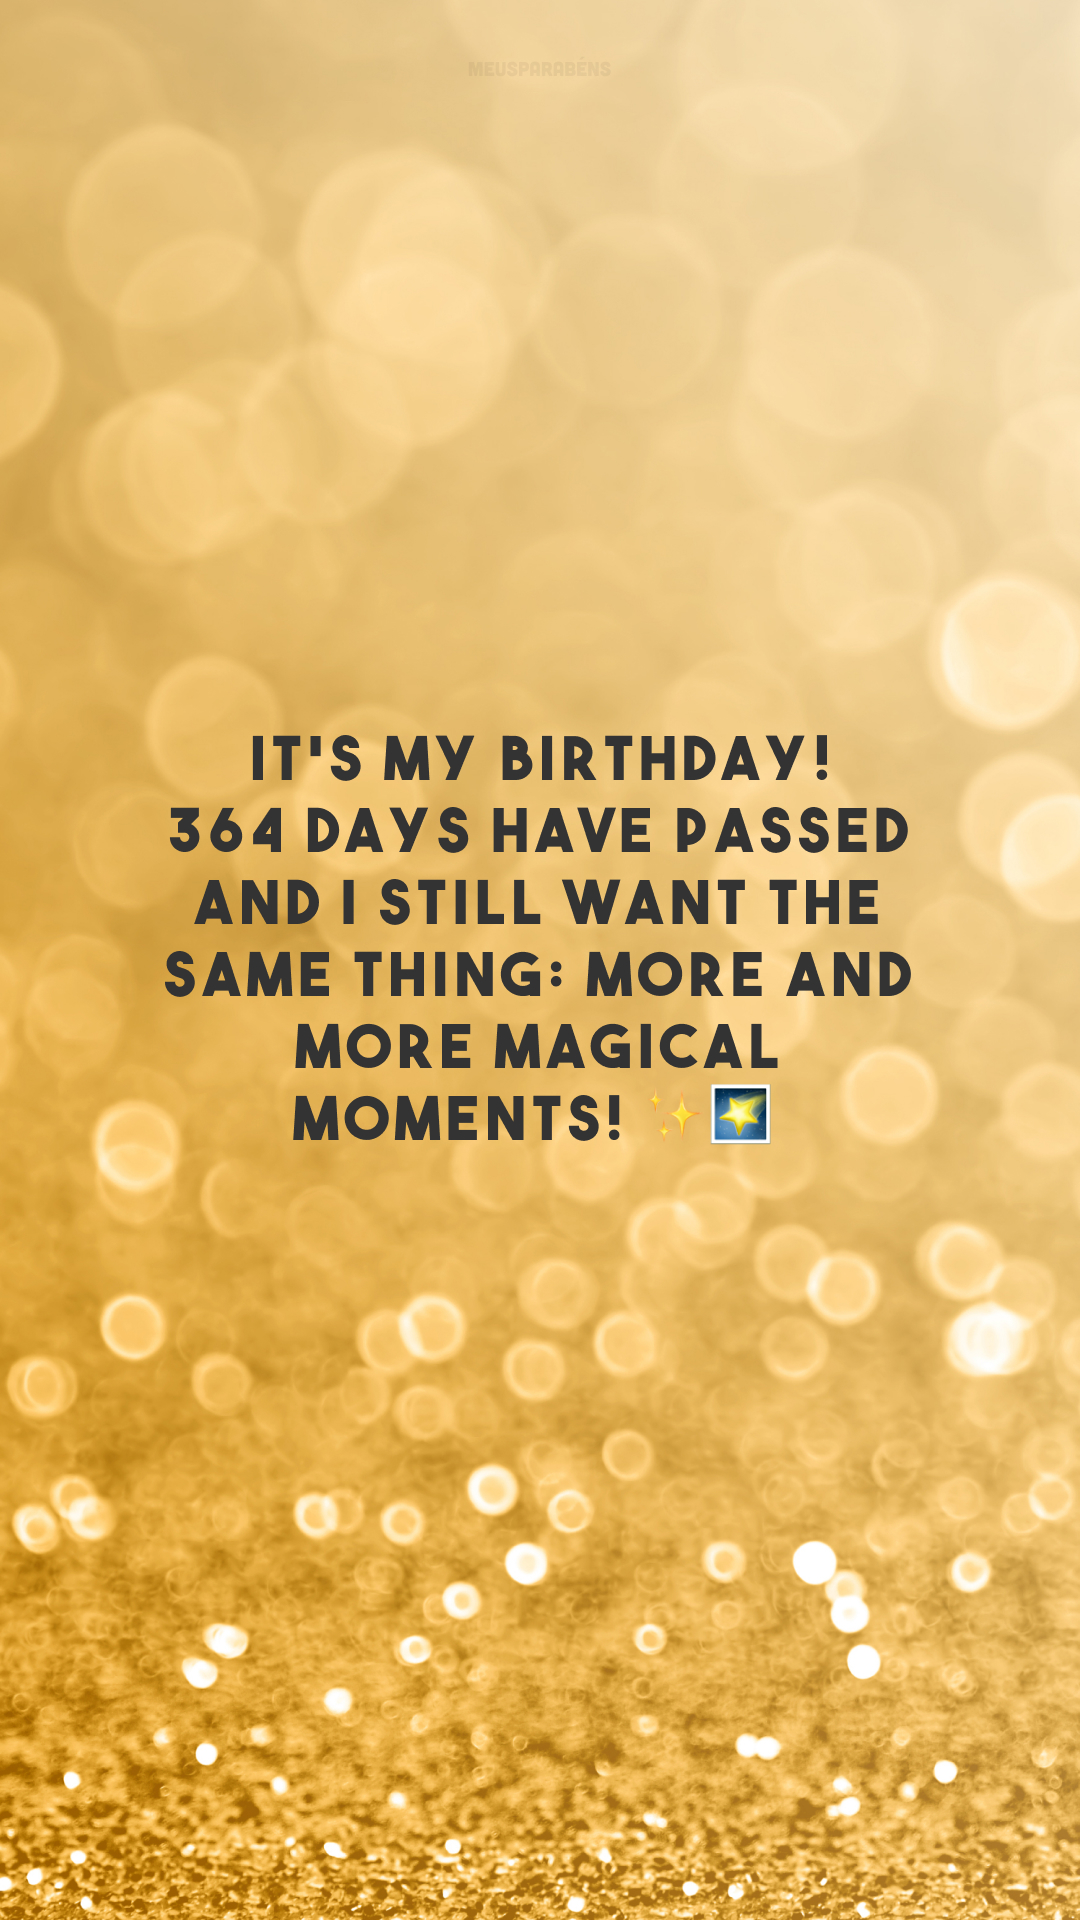 It's my birthday! 364 days have passed and I still want the same thing: more and more magical moments! ✨🌠

<p>(É meu aniversário! 364 dias já se passaram e eu continuo desejando a mesma coisa: momentos cada vez mais mágicos!)<p>